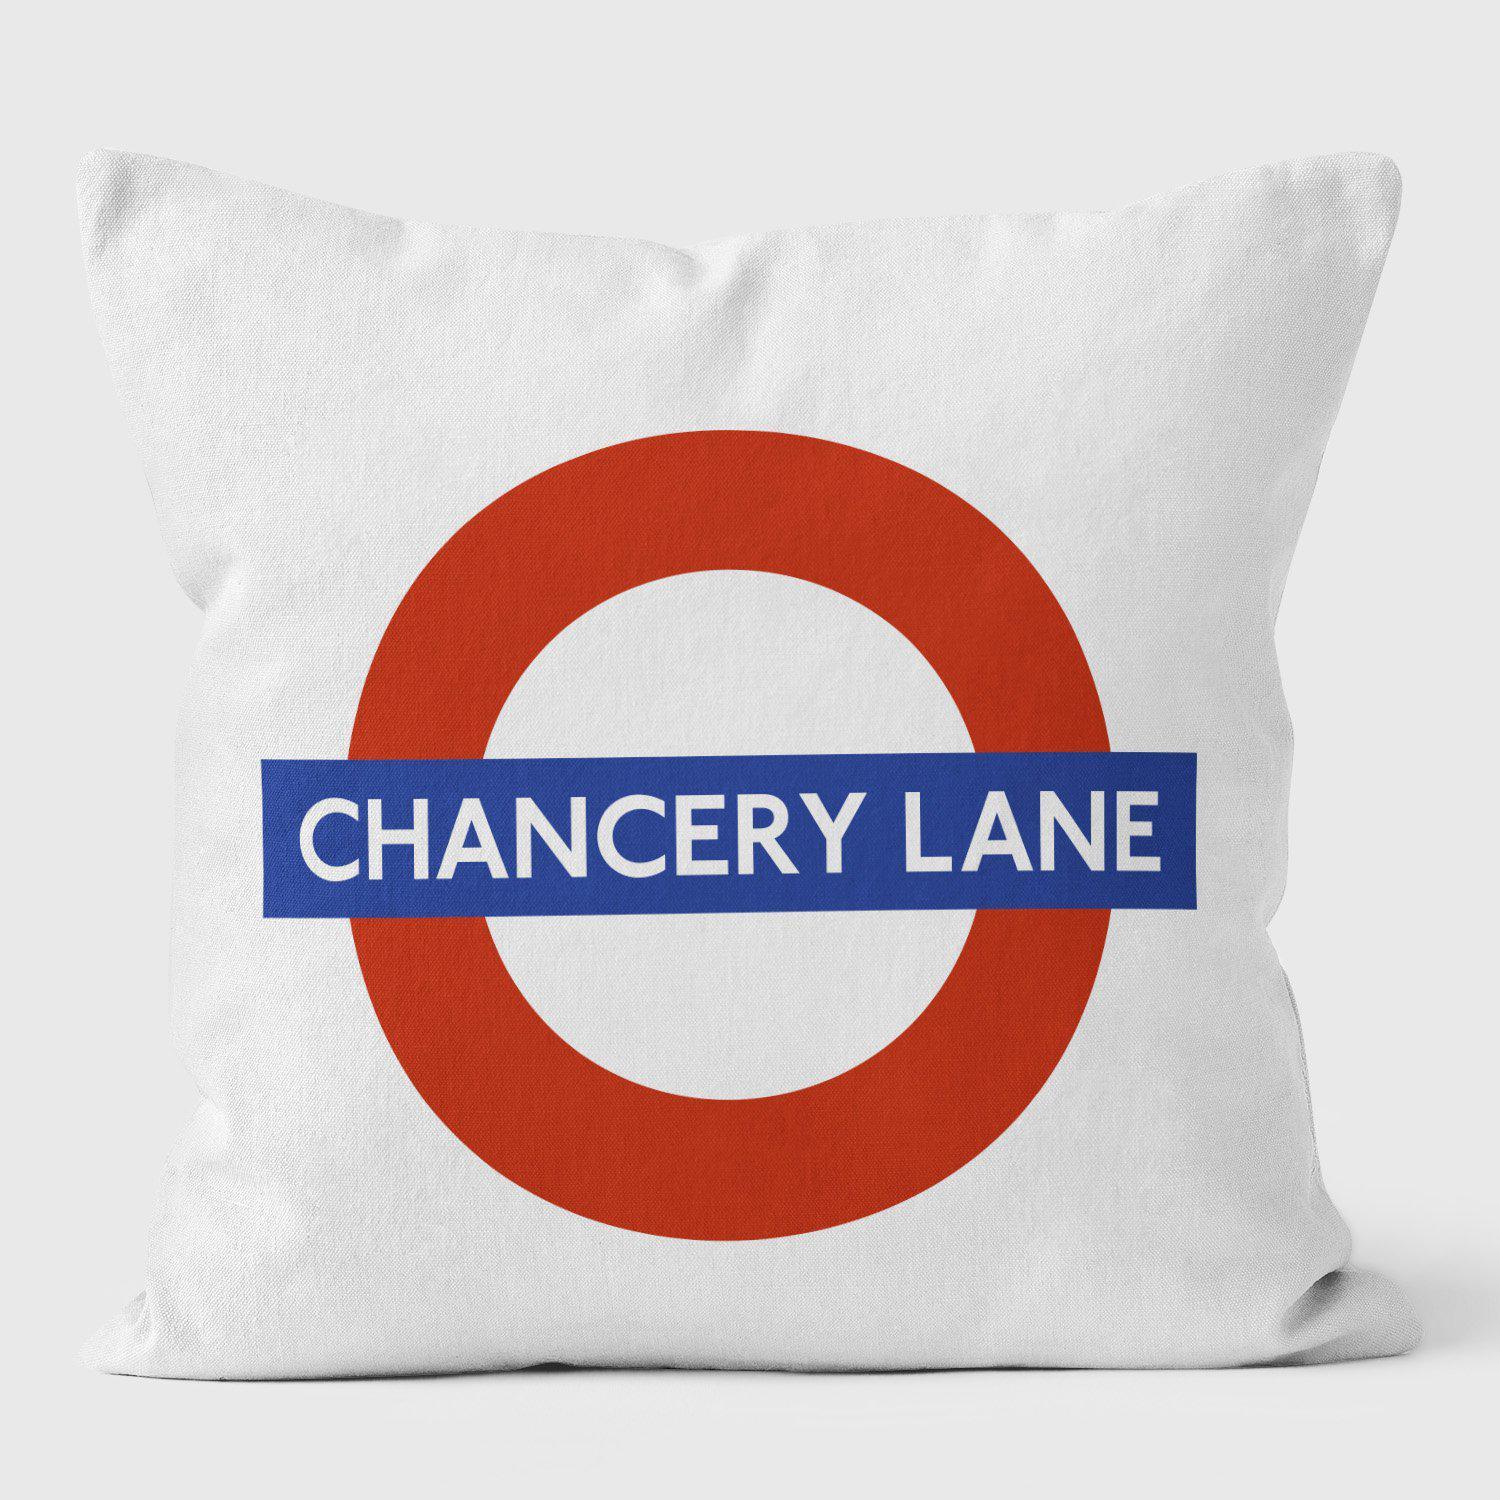 Chancery Lane London Underground Tube Station Roundel Cushion - Handmade Cushions UK - WeLoveCushions